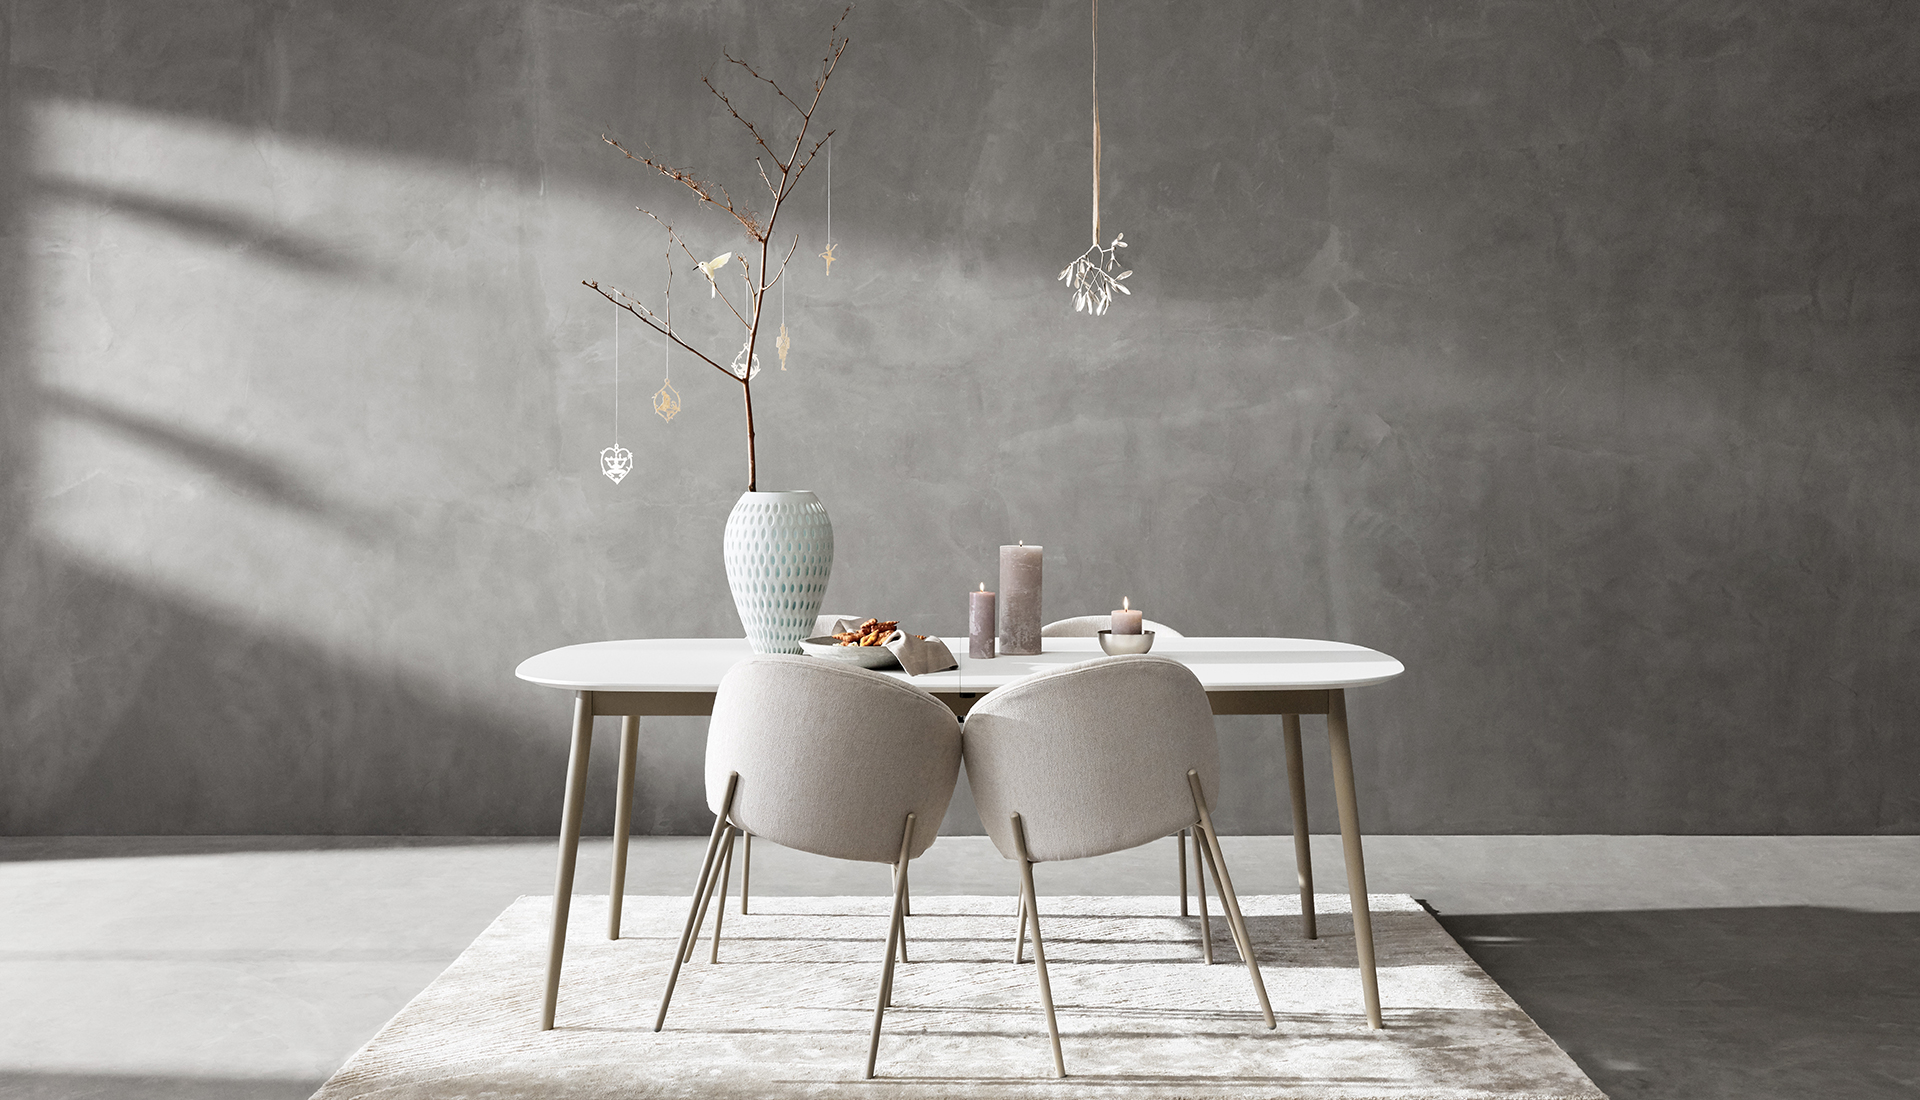 Датский дизайн: обеденный стол и стулья Мортена Георгсена